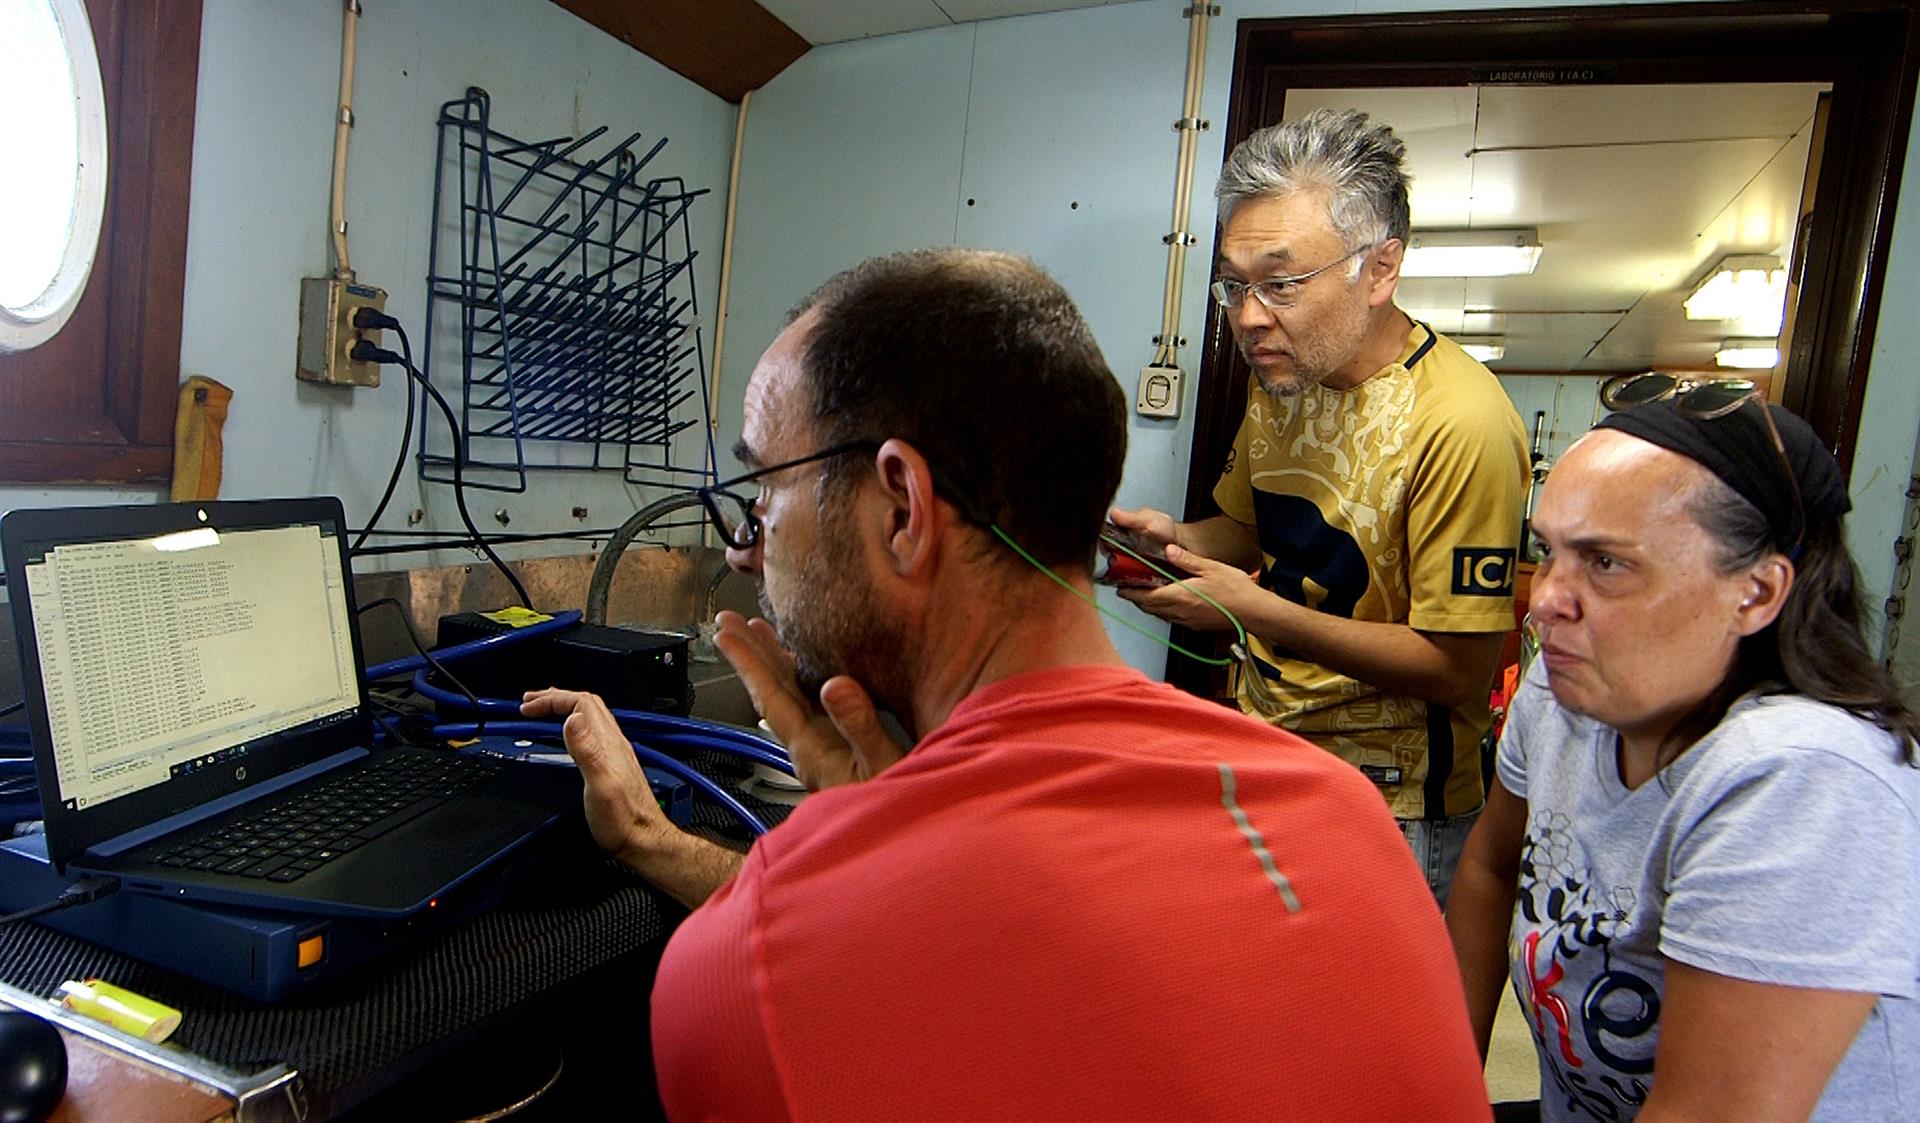 El especialista en física de sismos Víctor Manuel Cruz Atienza (izq.) acompañado de científicos revisan datos a bordo del buque "Puma", el 5 de abril de 2022 en aguas de Mazatlán en Sinaloa (EFE)